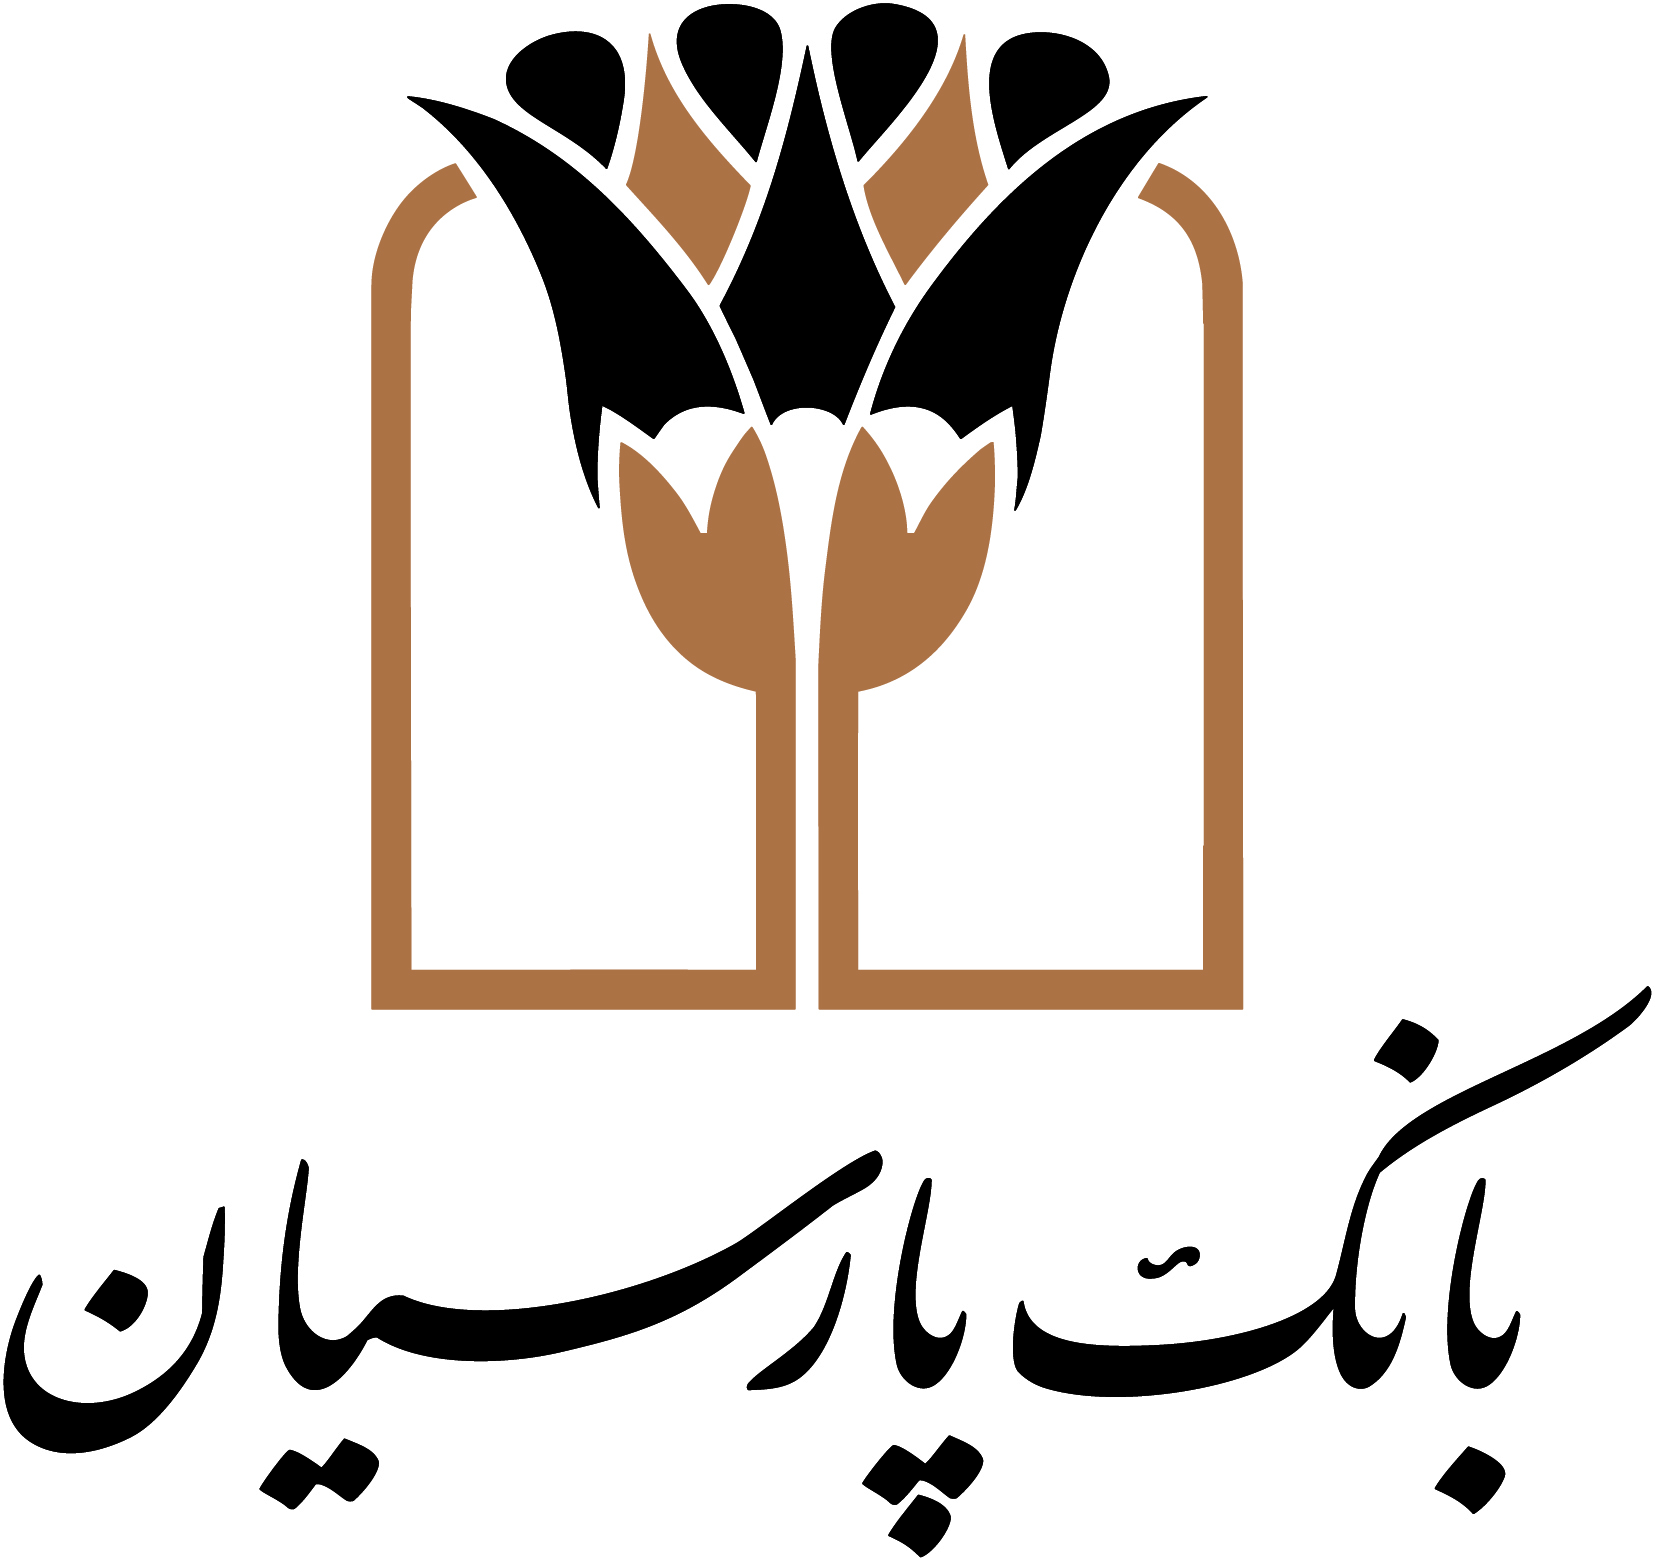 رییس کمیسیون عمران مجلس: مشارکت بانک پارسیان درطرح های عمرانی و توسعه ای کشور، شایسته تقدیر است